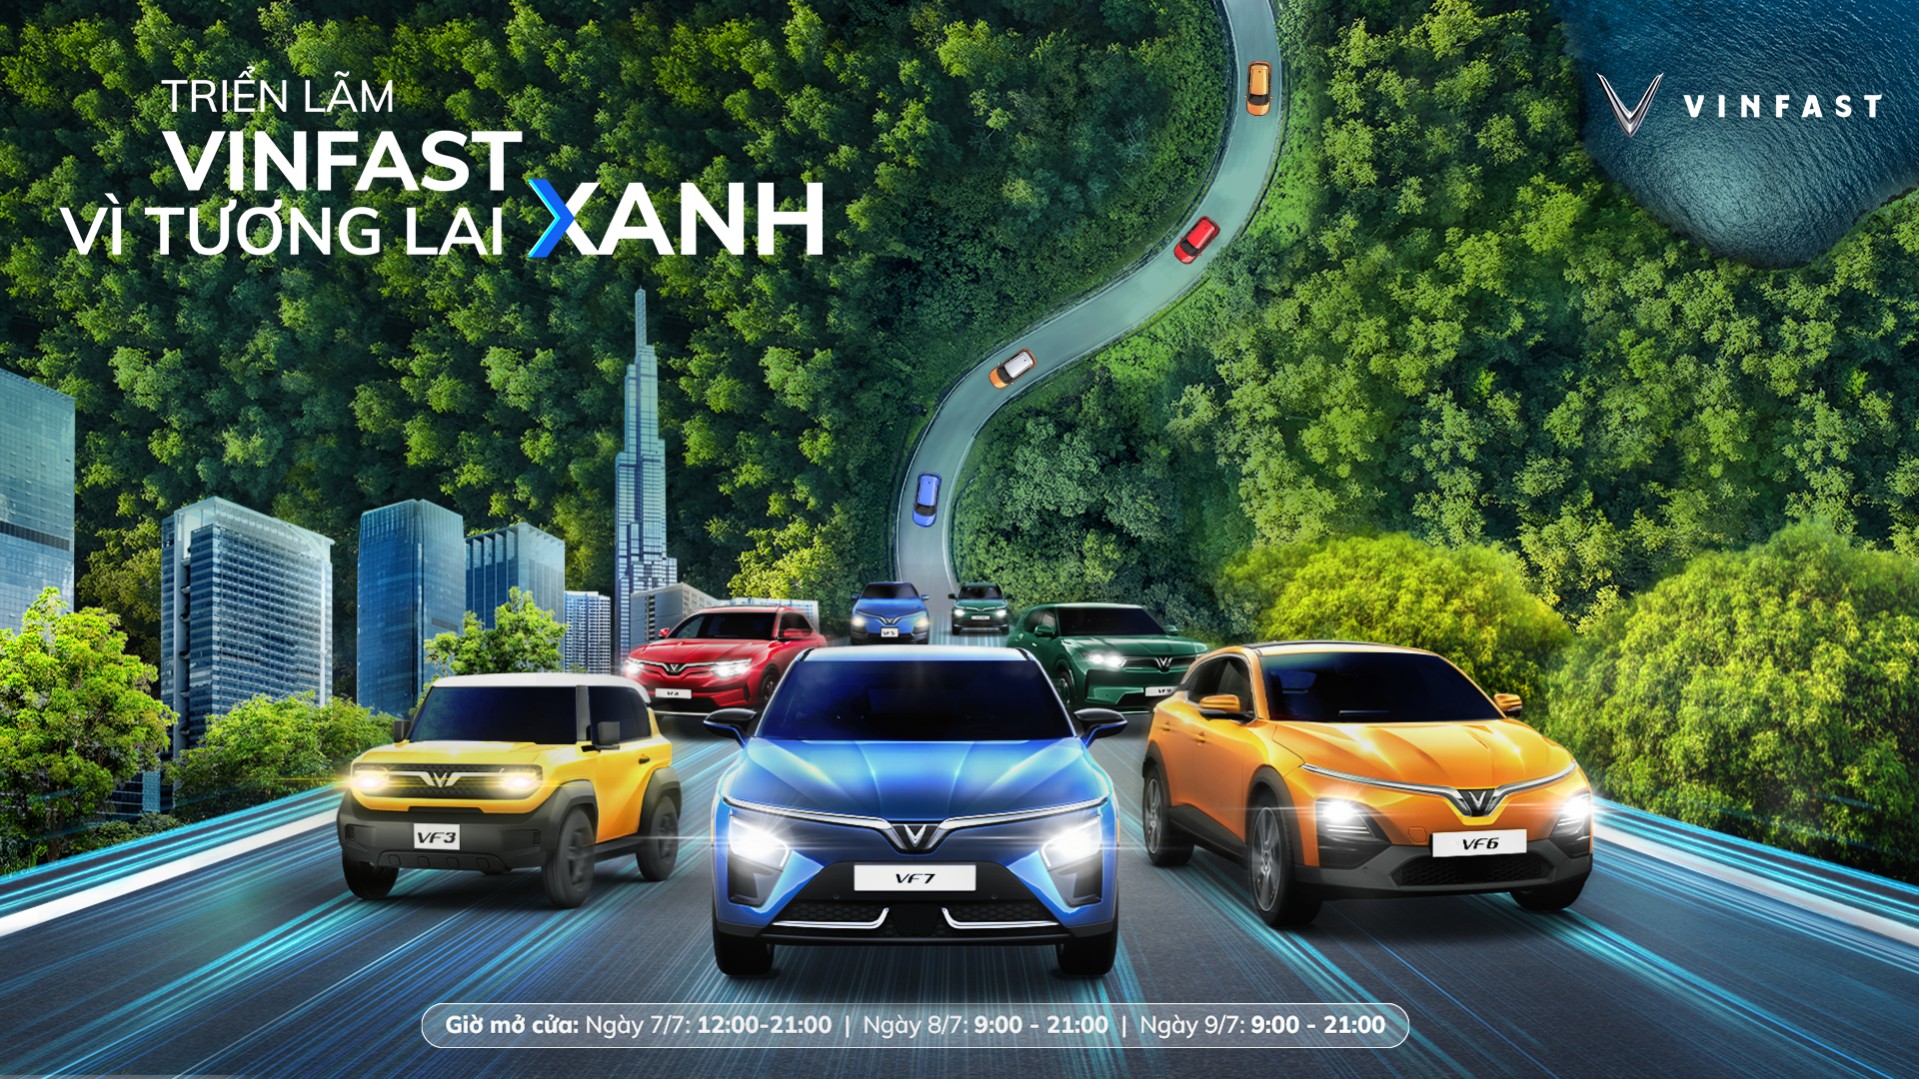 Triển lãm “VinFast - Vì tương lai xanh” tại Hà Nội: ra mắt bộ tứ xe điện VinFast mới - Ảnh 2.